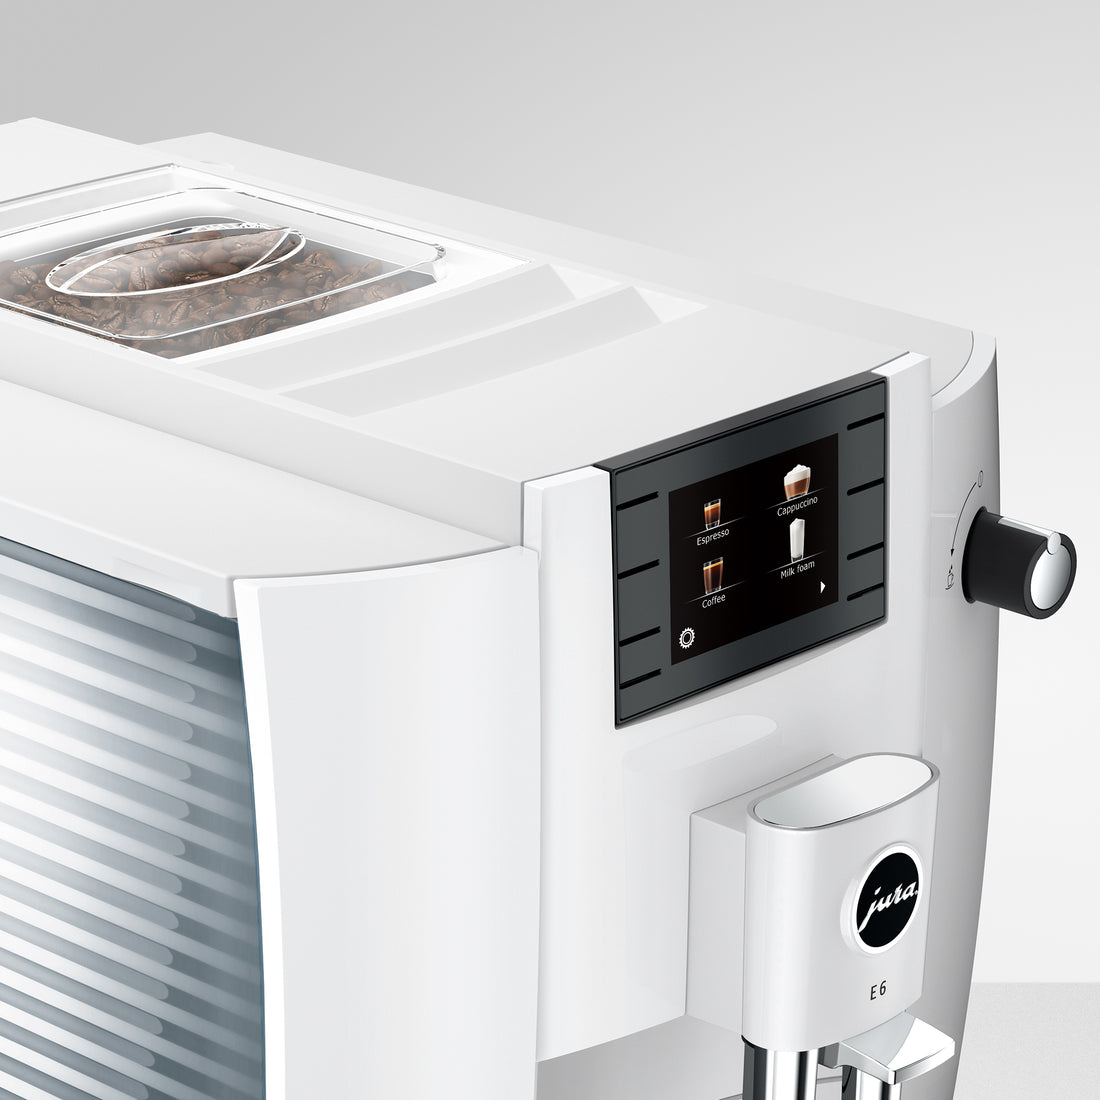 JURA E6 Automatic Espresso Machine in Piano White (NAA)